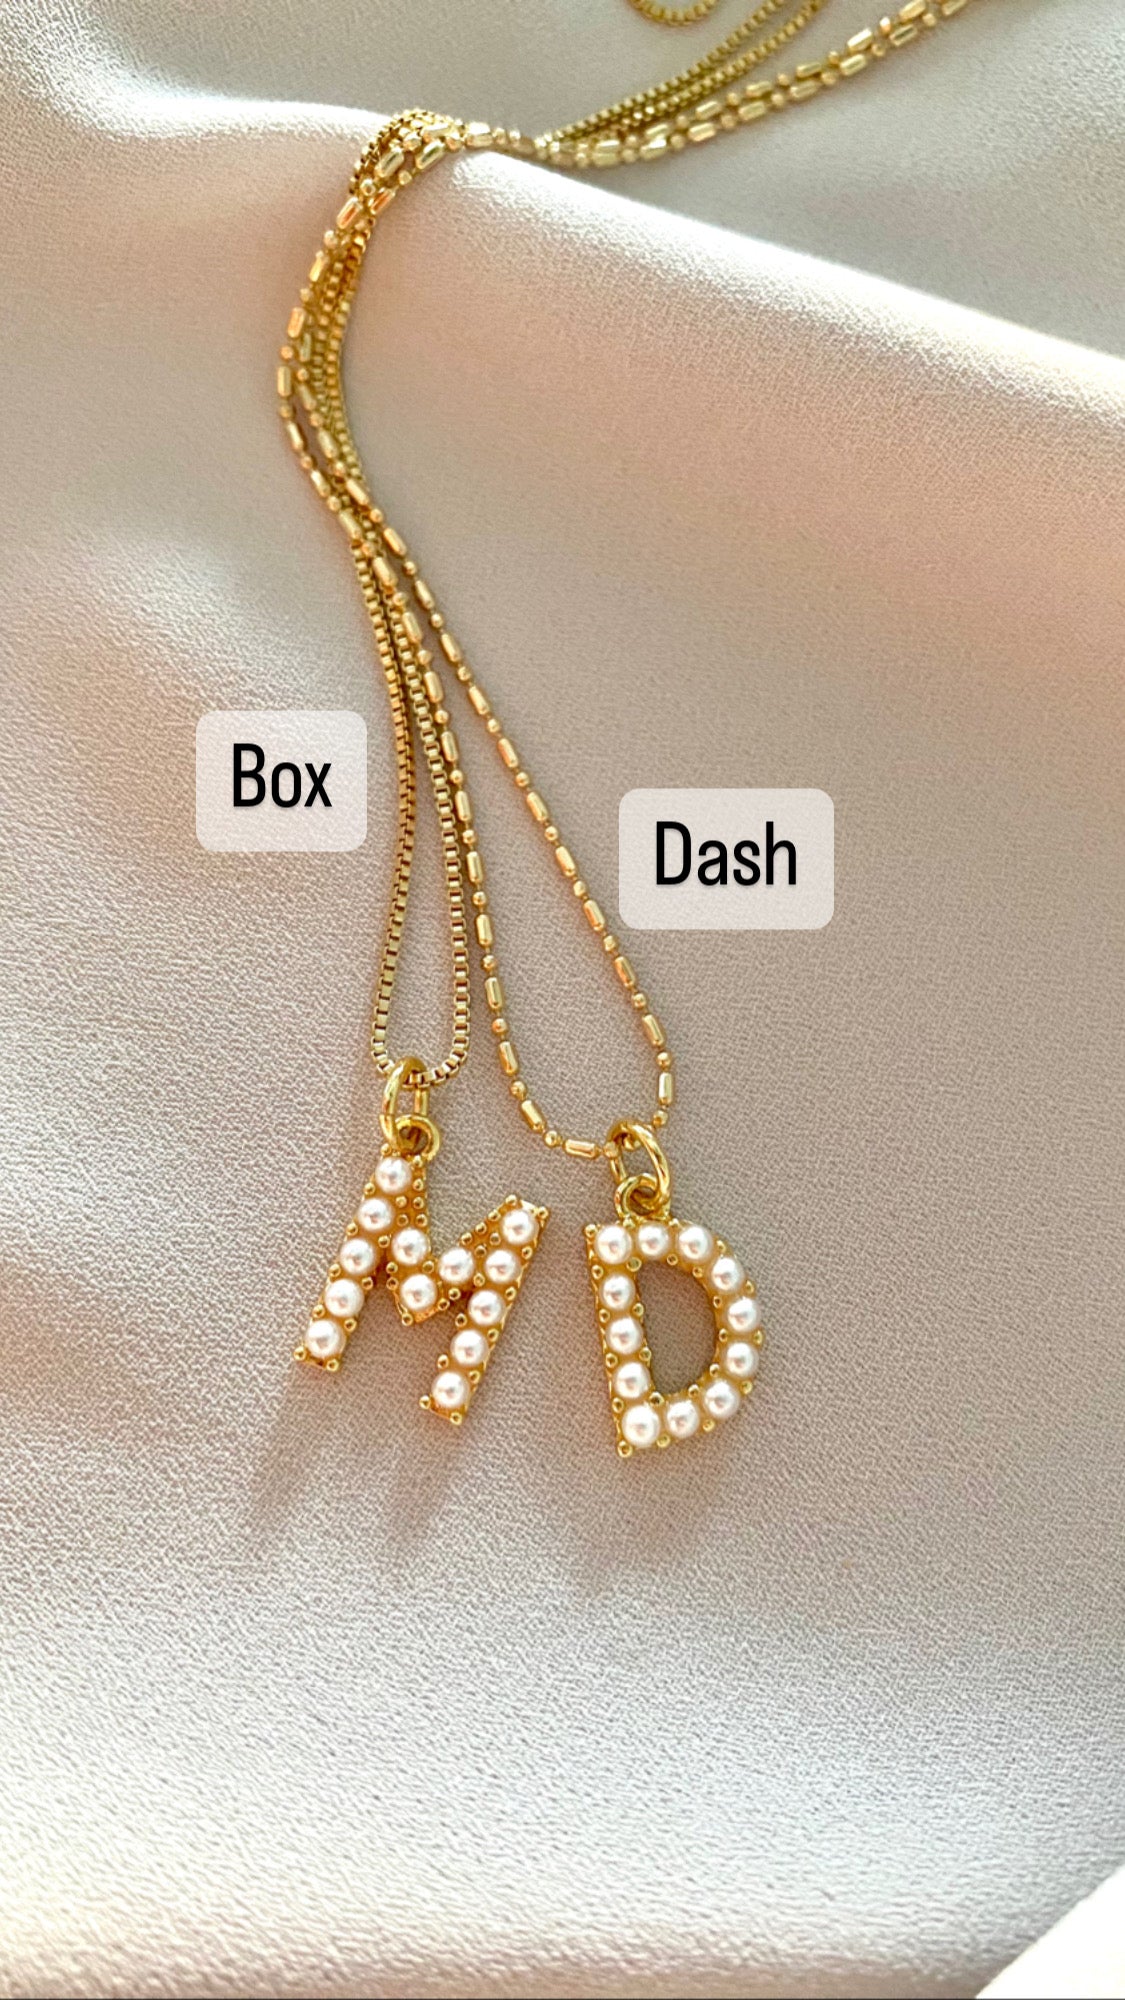 9ct Gold Rialto Love Lock Charm Necklace | Posh Totty Designs